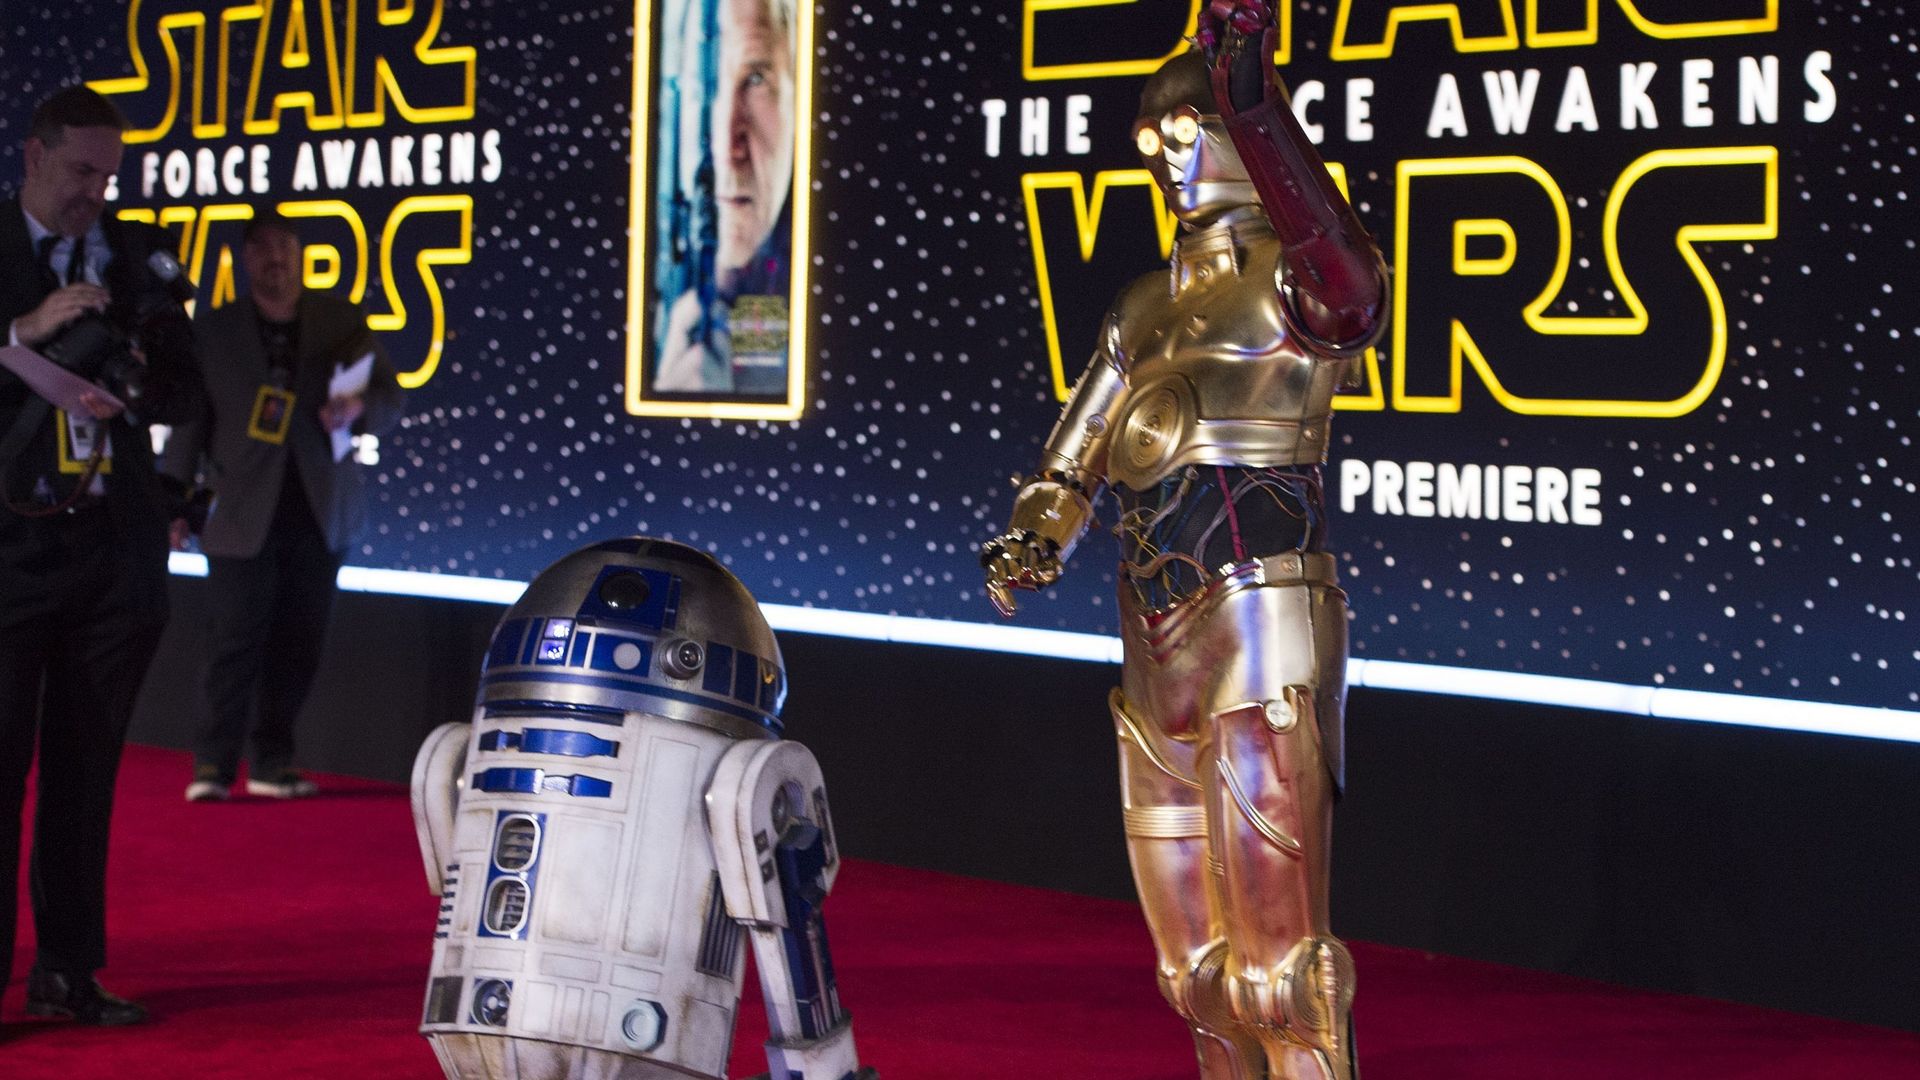 Les droïdes R2-D2 and C-3PO pour la première de "Star Wars : Le réveil de la force", à Hollywood